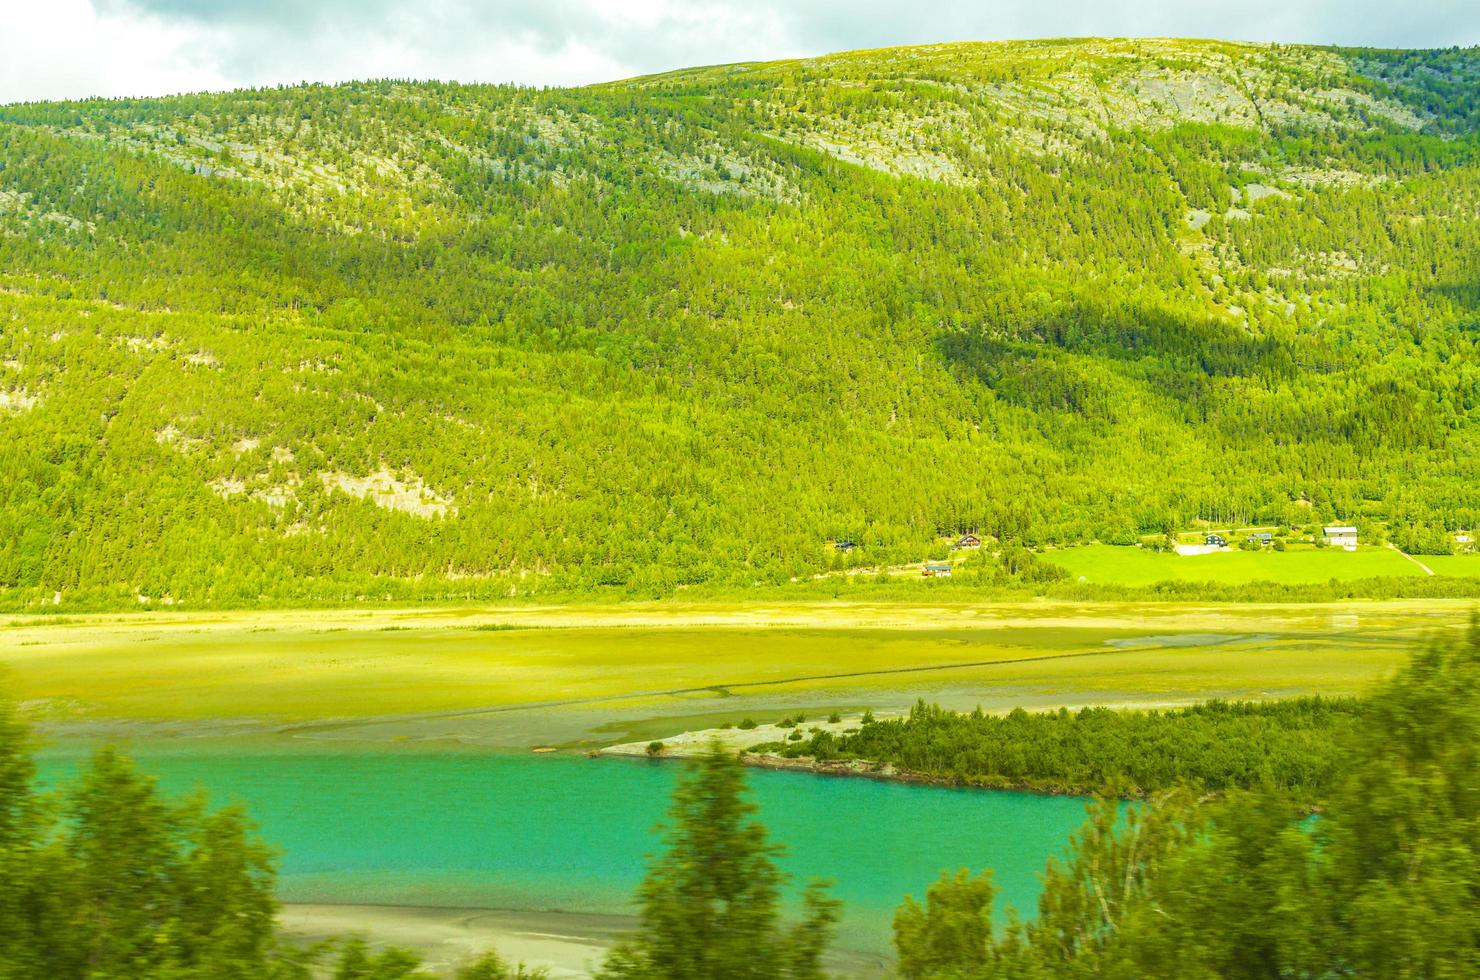 água turquesa derretida flui no rio através da paisagem montanhosa da Noruega foto